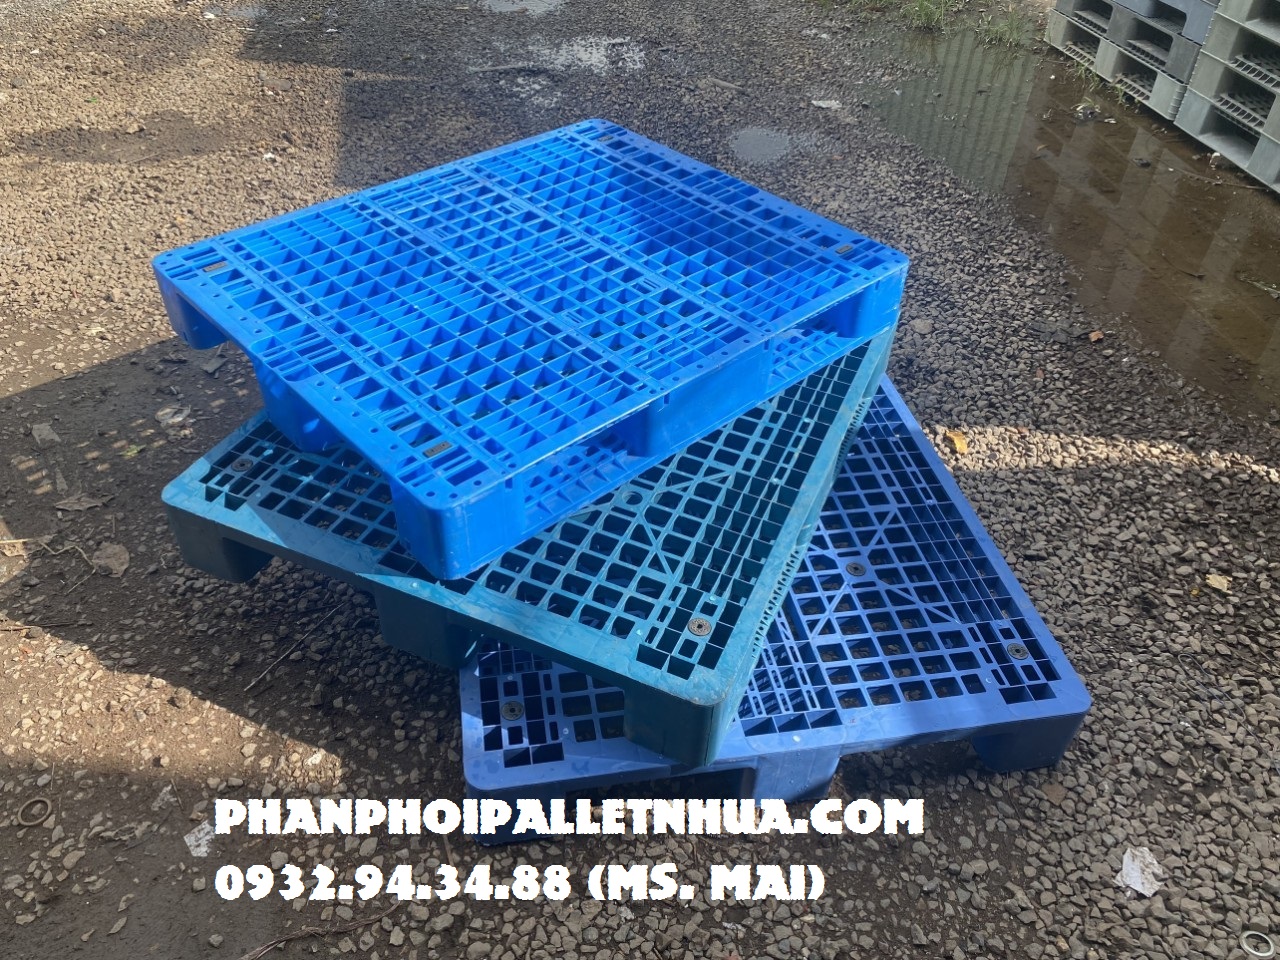 Chuyên cung cấp pallet nhựa cũ tại Lâm Đồng với giá rẻ cạnh tranh